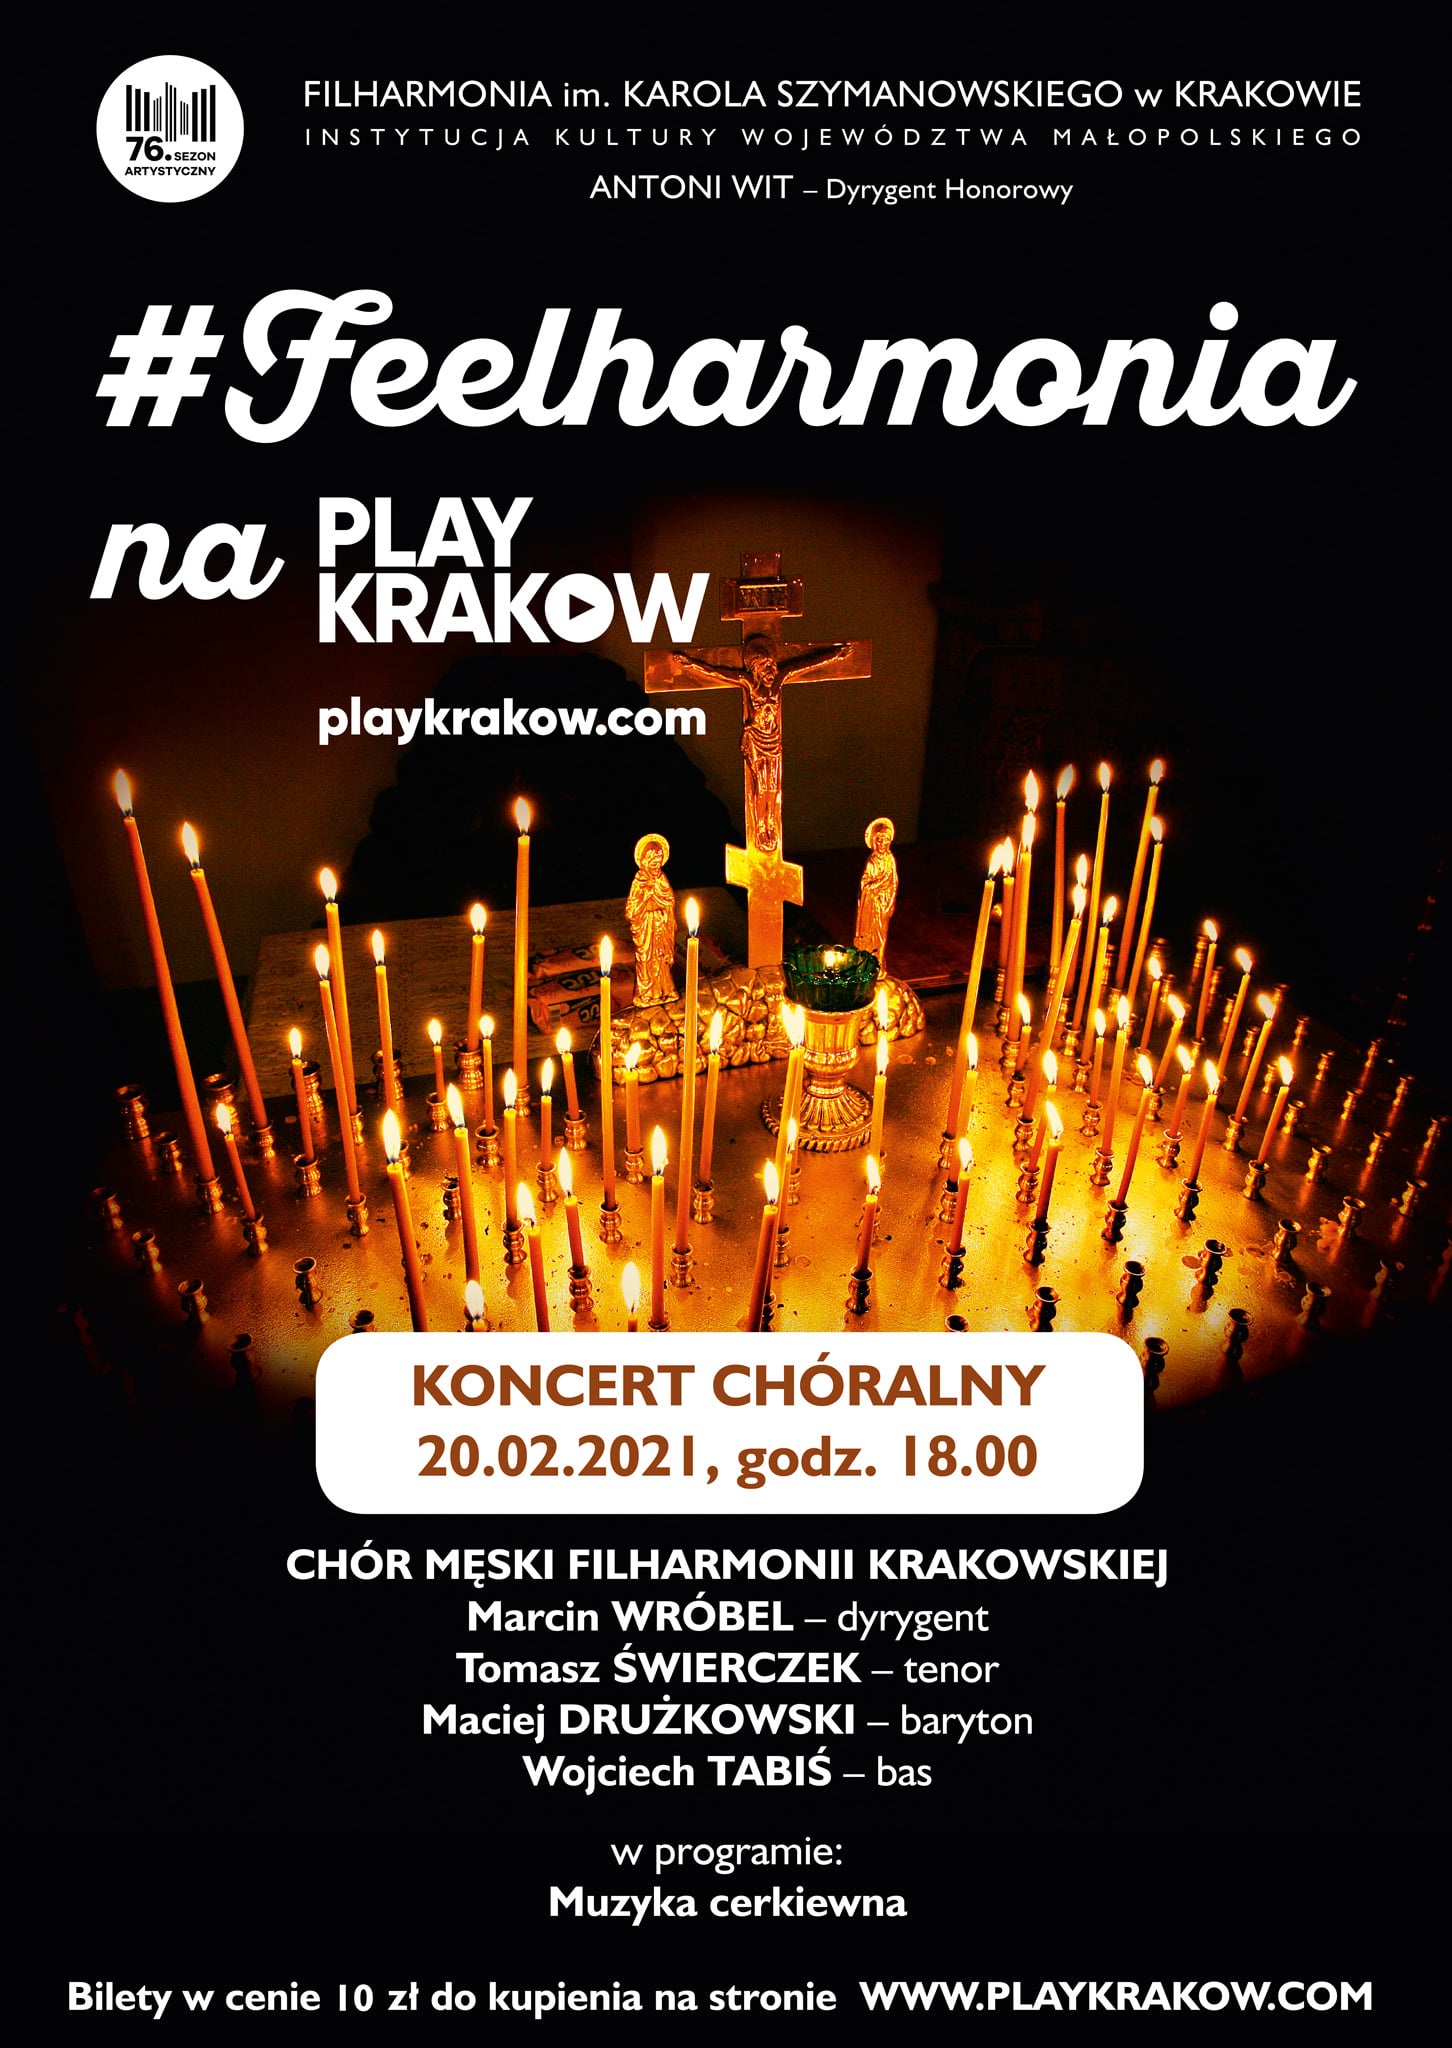 Koncert Filharmonii Krakowskiej - grafika promująca wydarzenie.